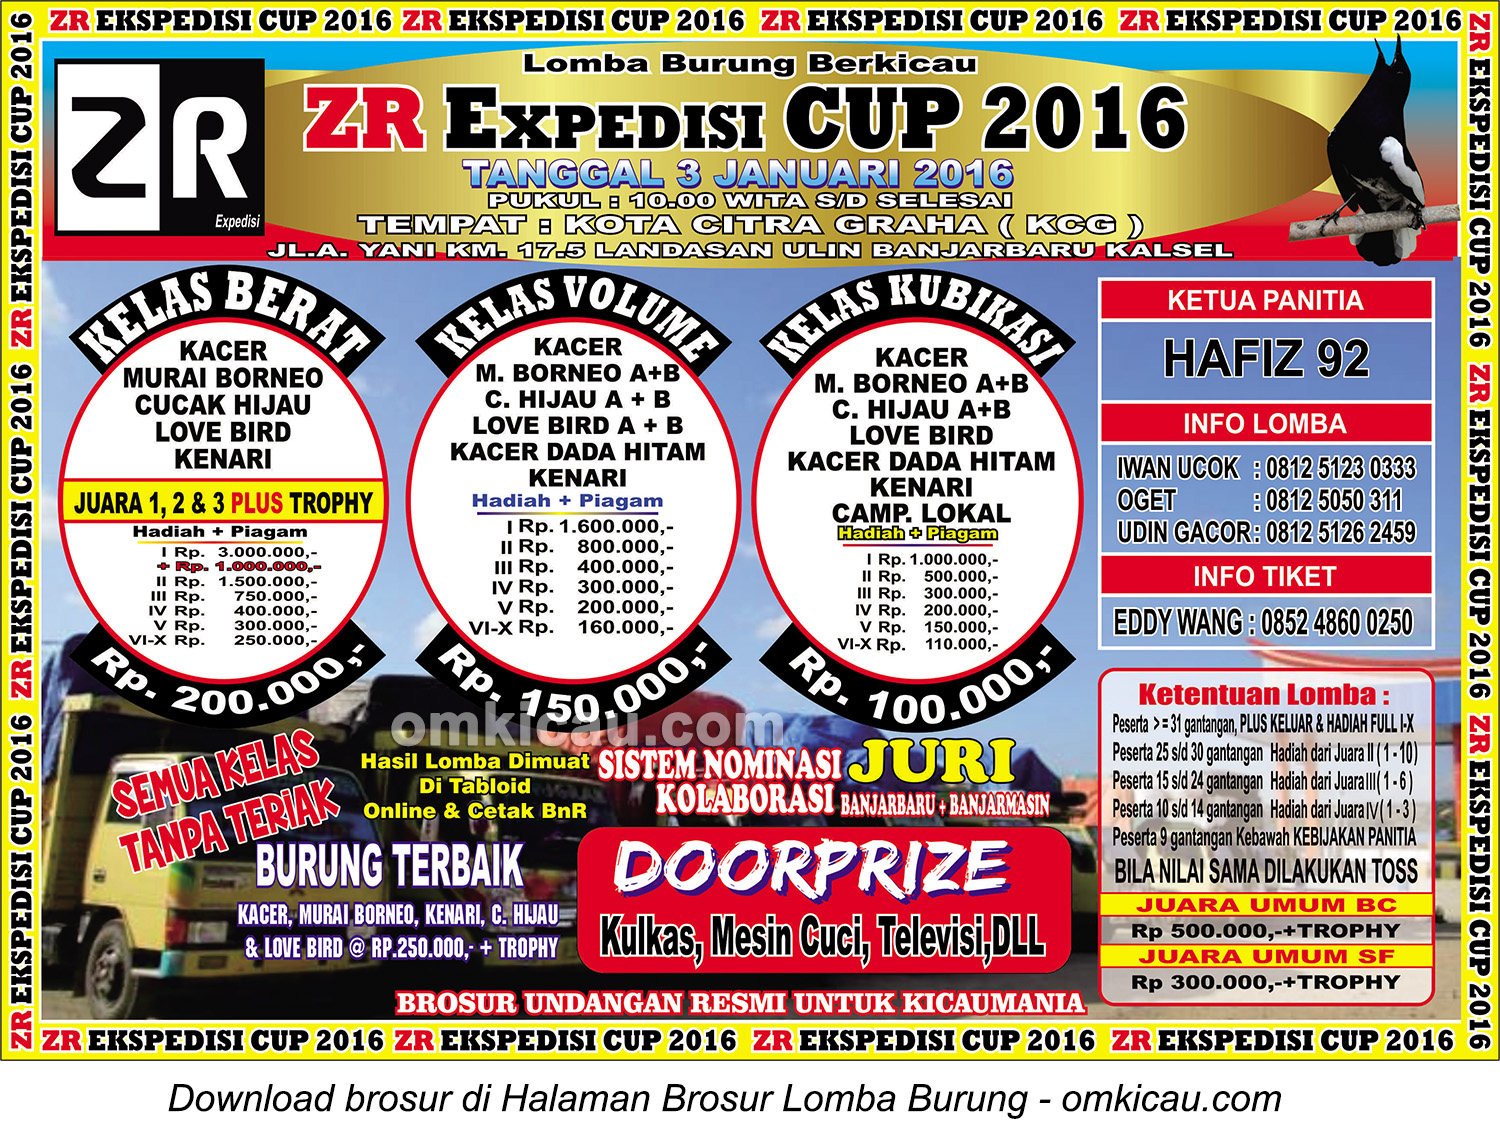 Brosur Lomba Burung Berkicau ZR Expedisi Cup, Banjarbaru, 3 Januari 2016